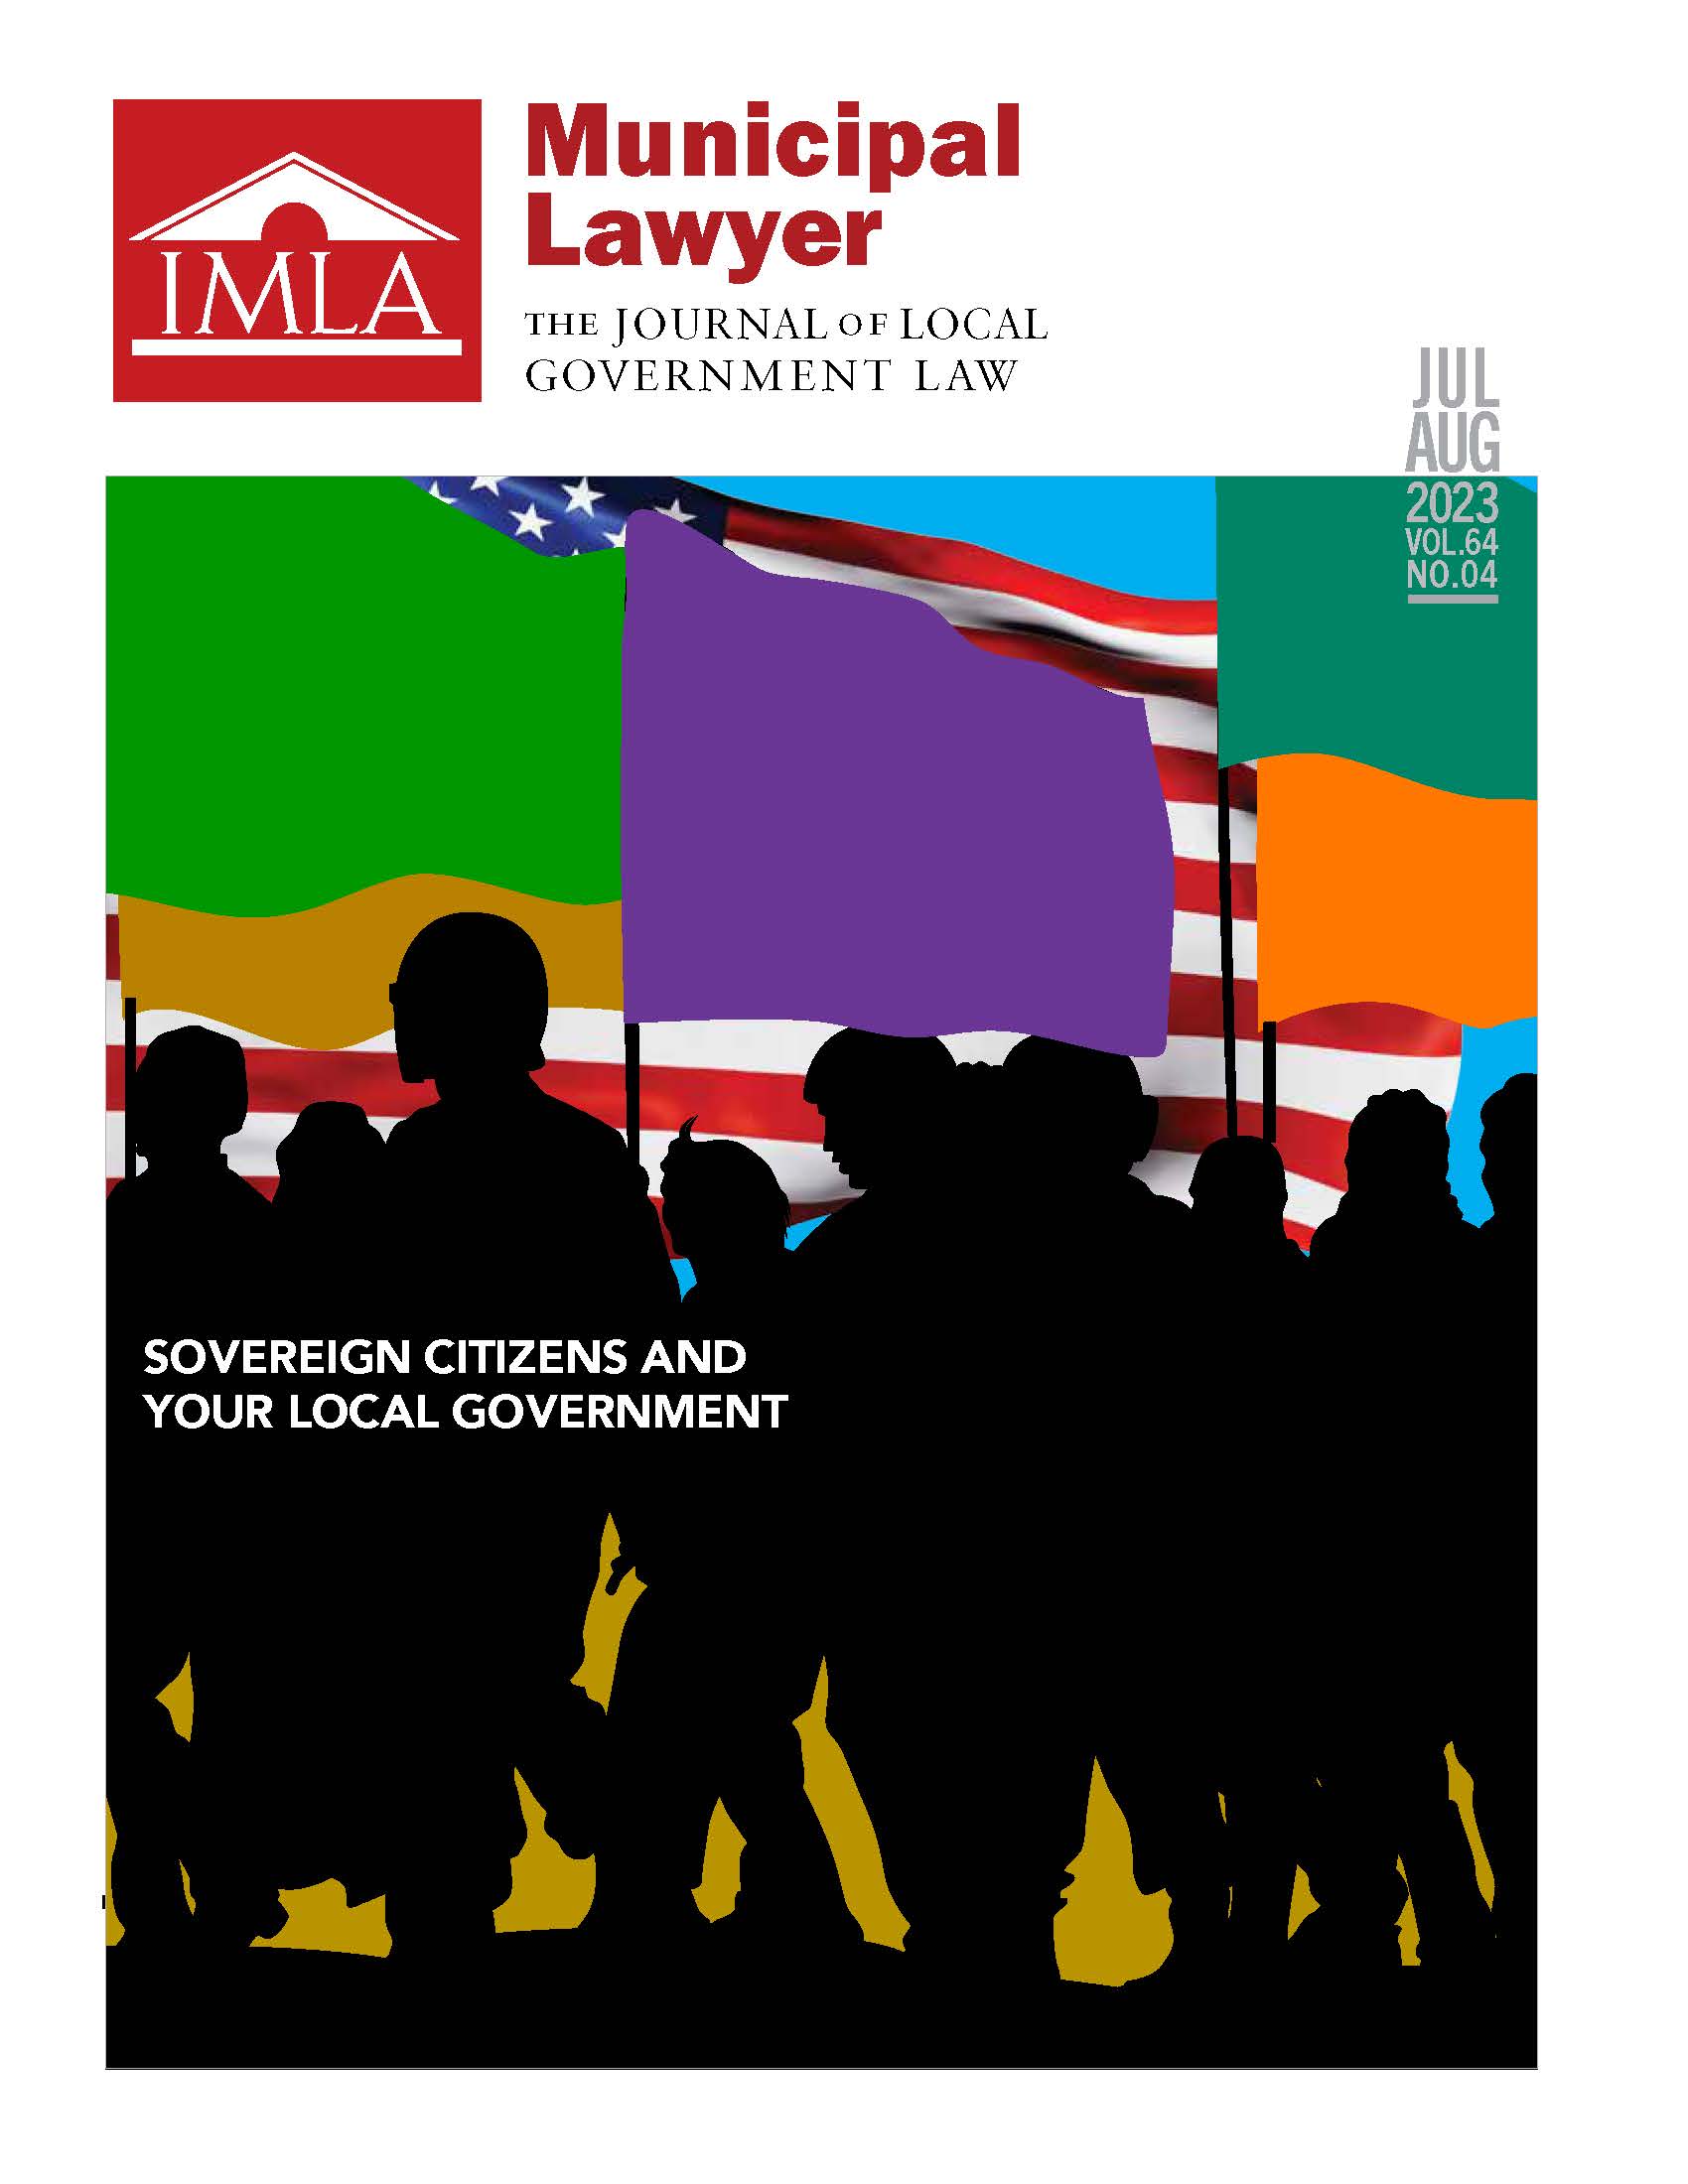 Cover of IMLA JEM